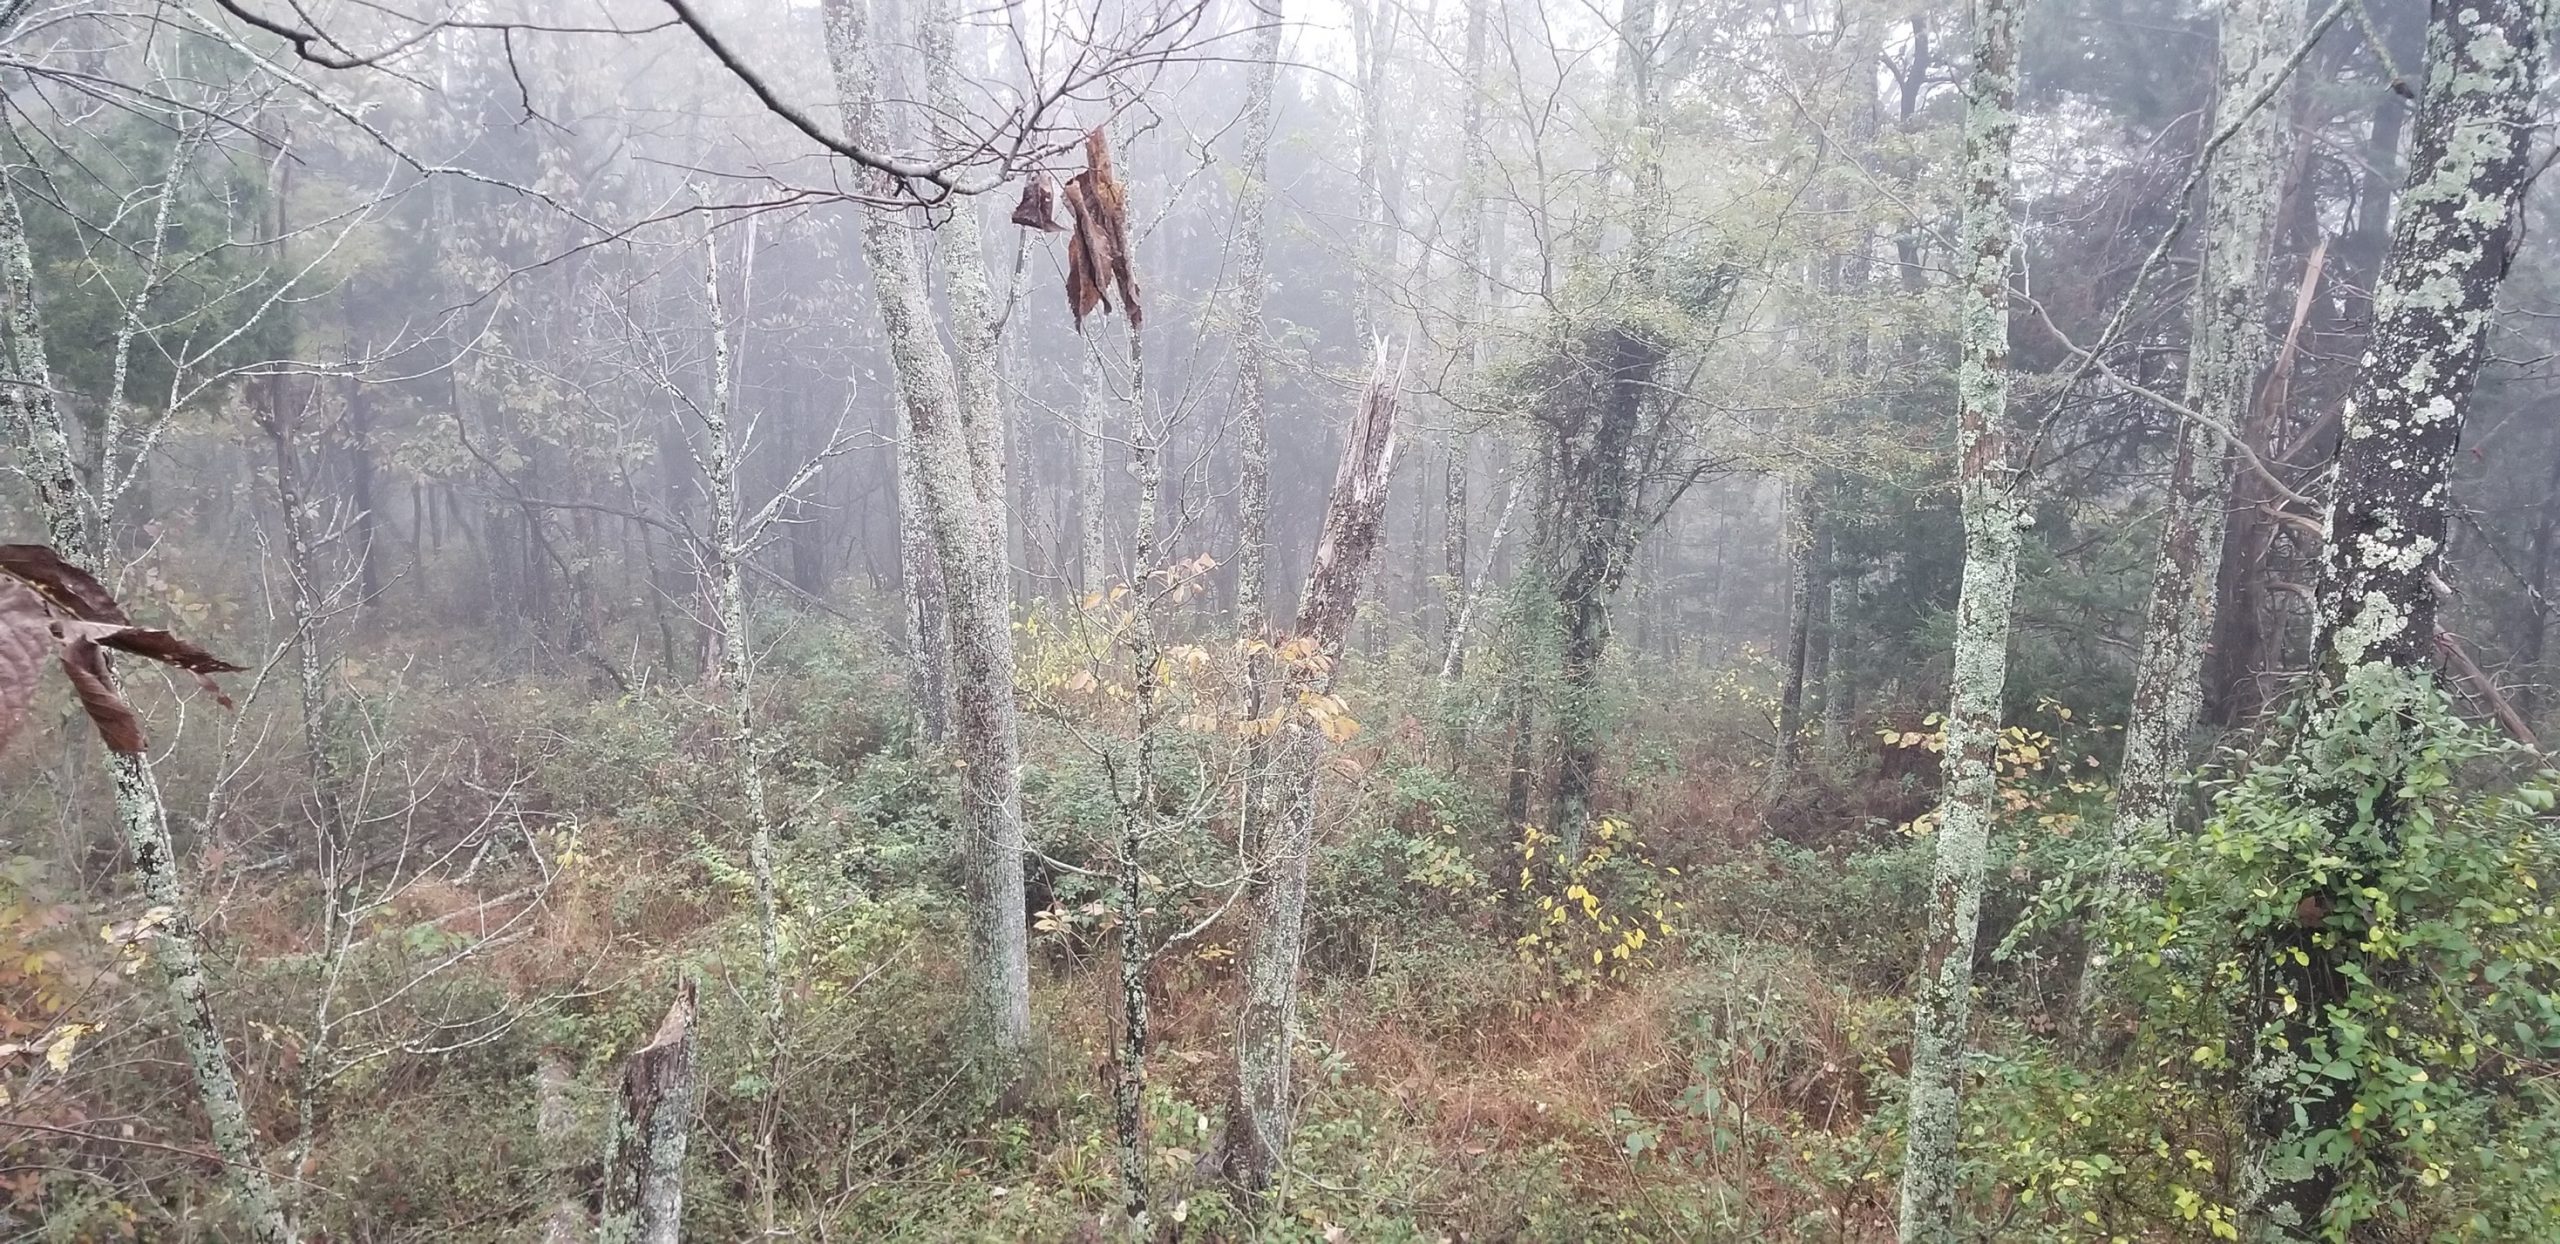 eastern neck trees in fog